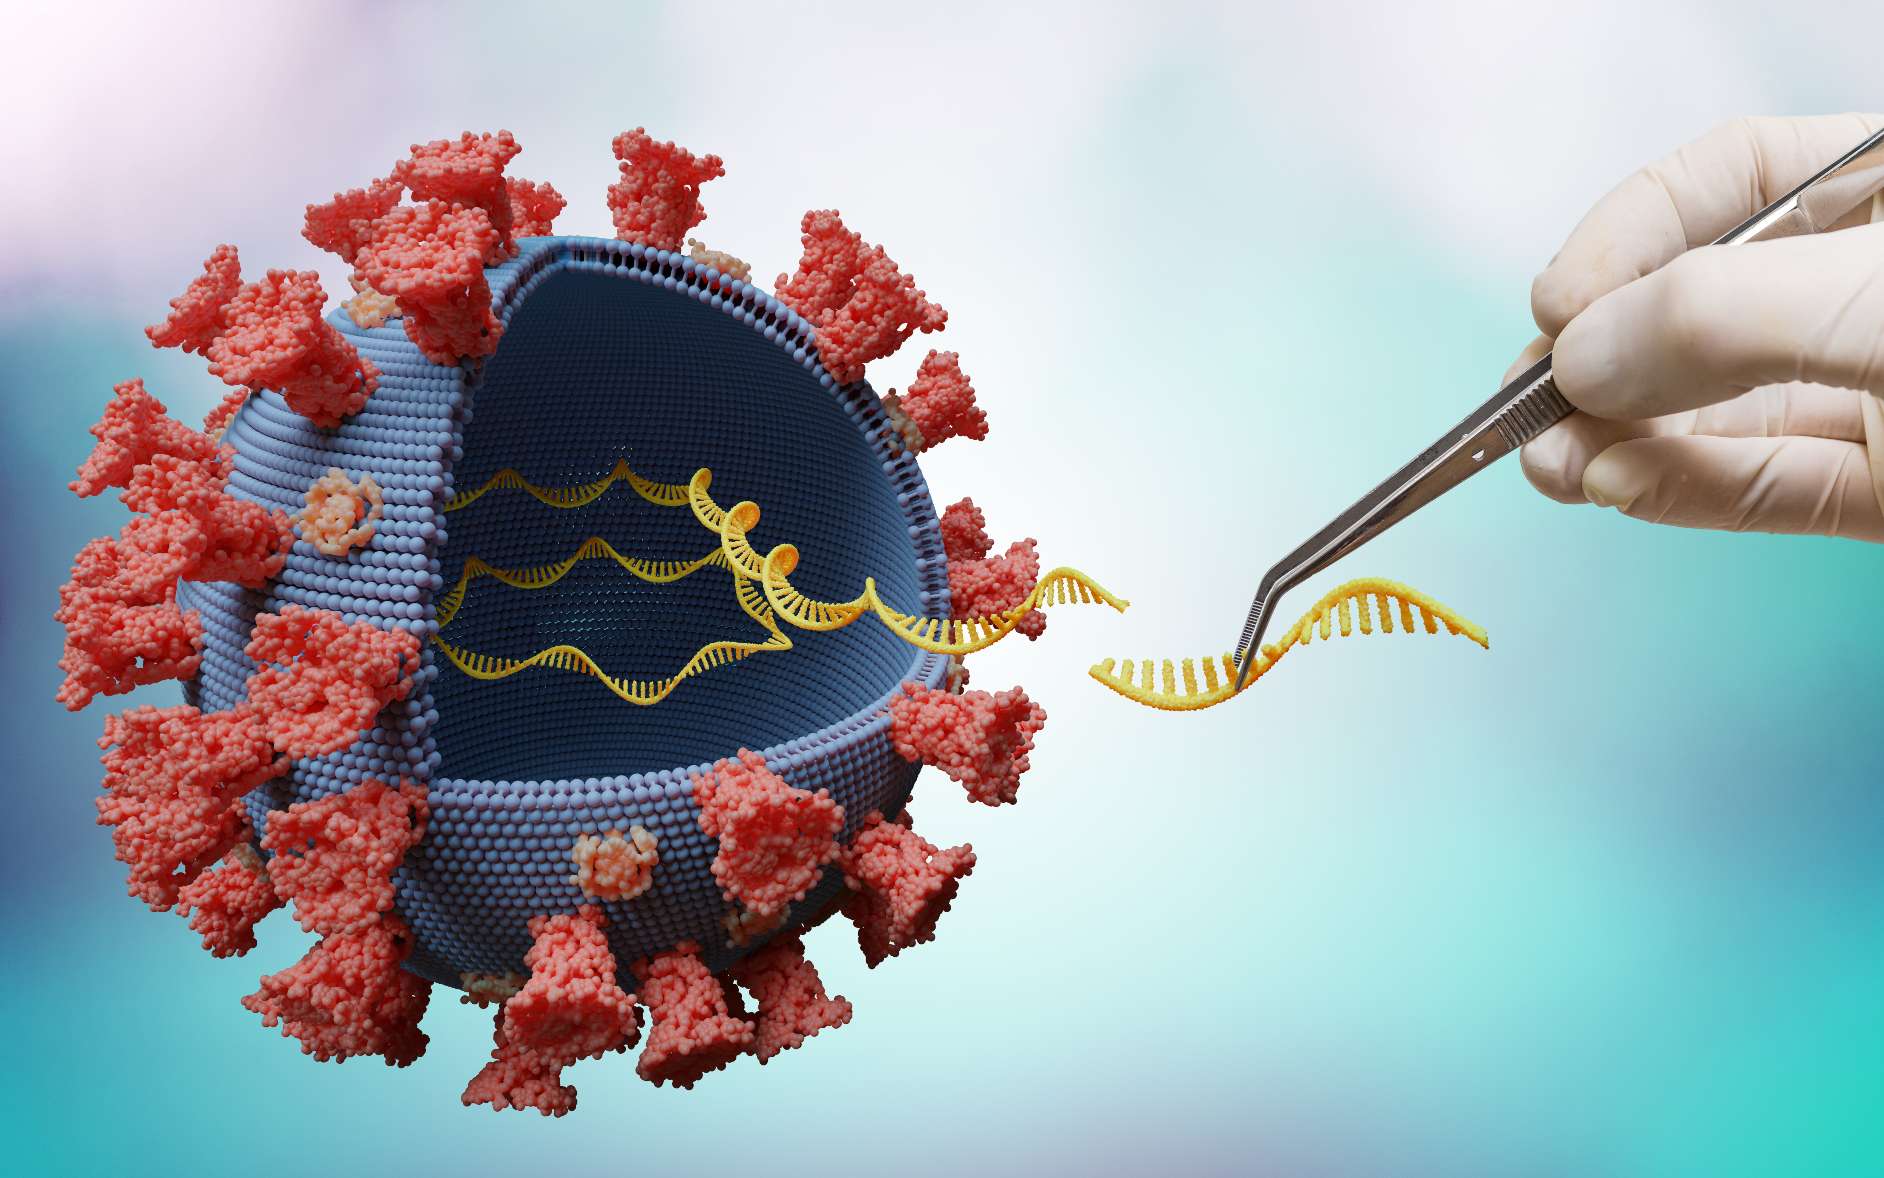 Le vaccin de Pfizer est basé sur la séquence ARN de la protéine S du SARs-CoV-2. © vchalup, Adobe Stock